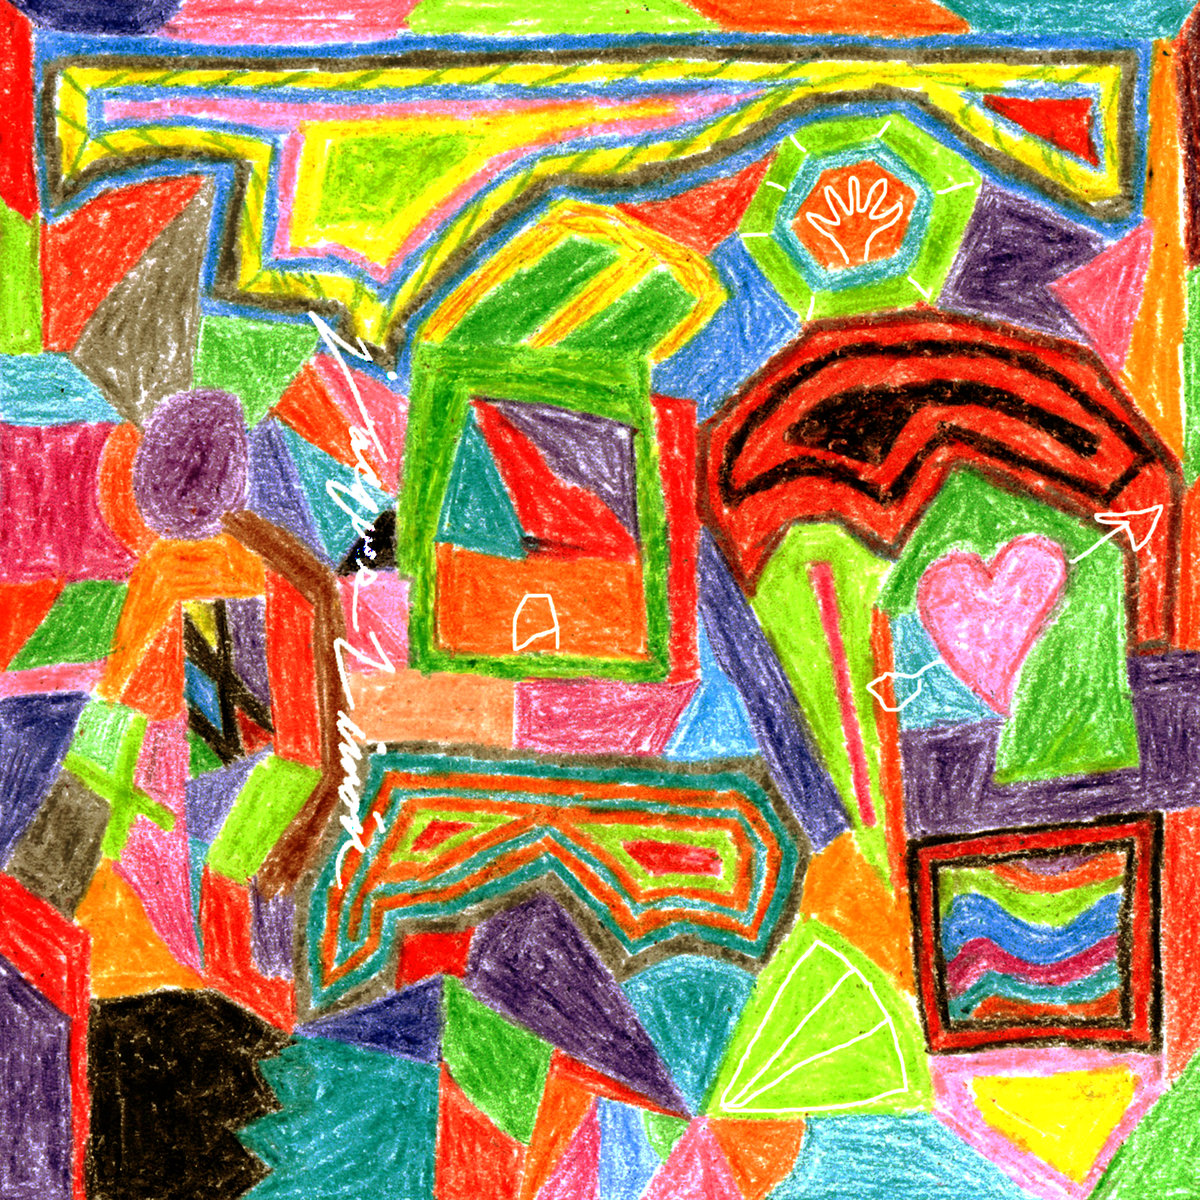 Jacques Limón album art coloured pencil doodles